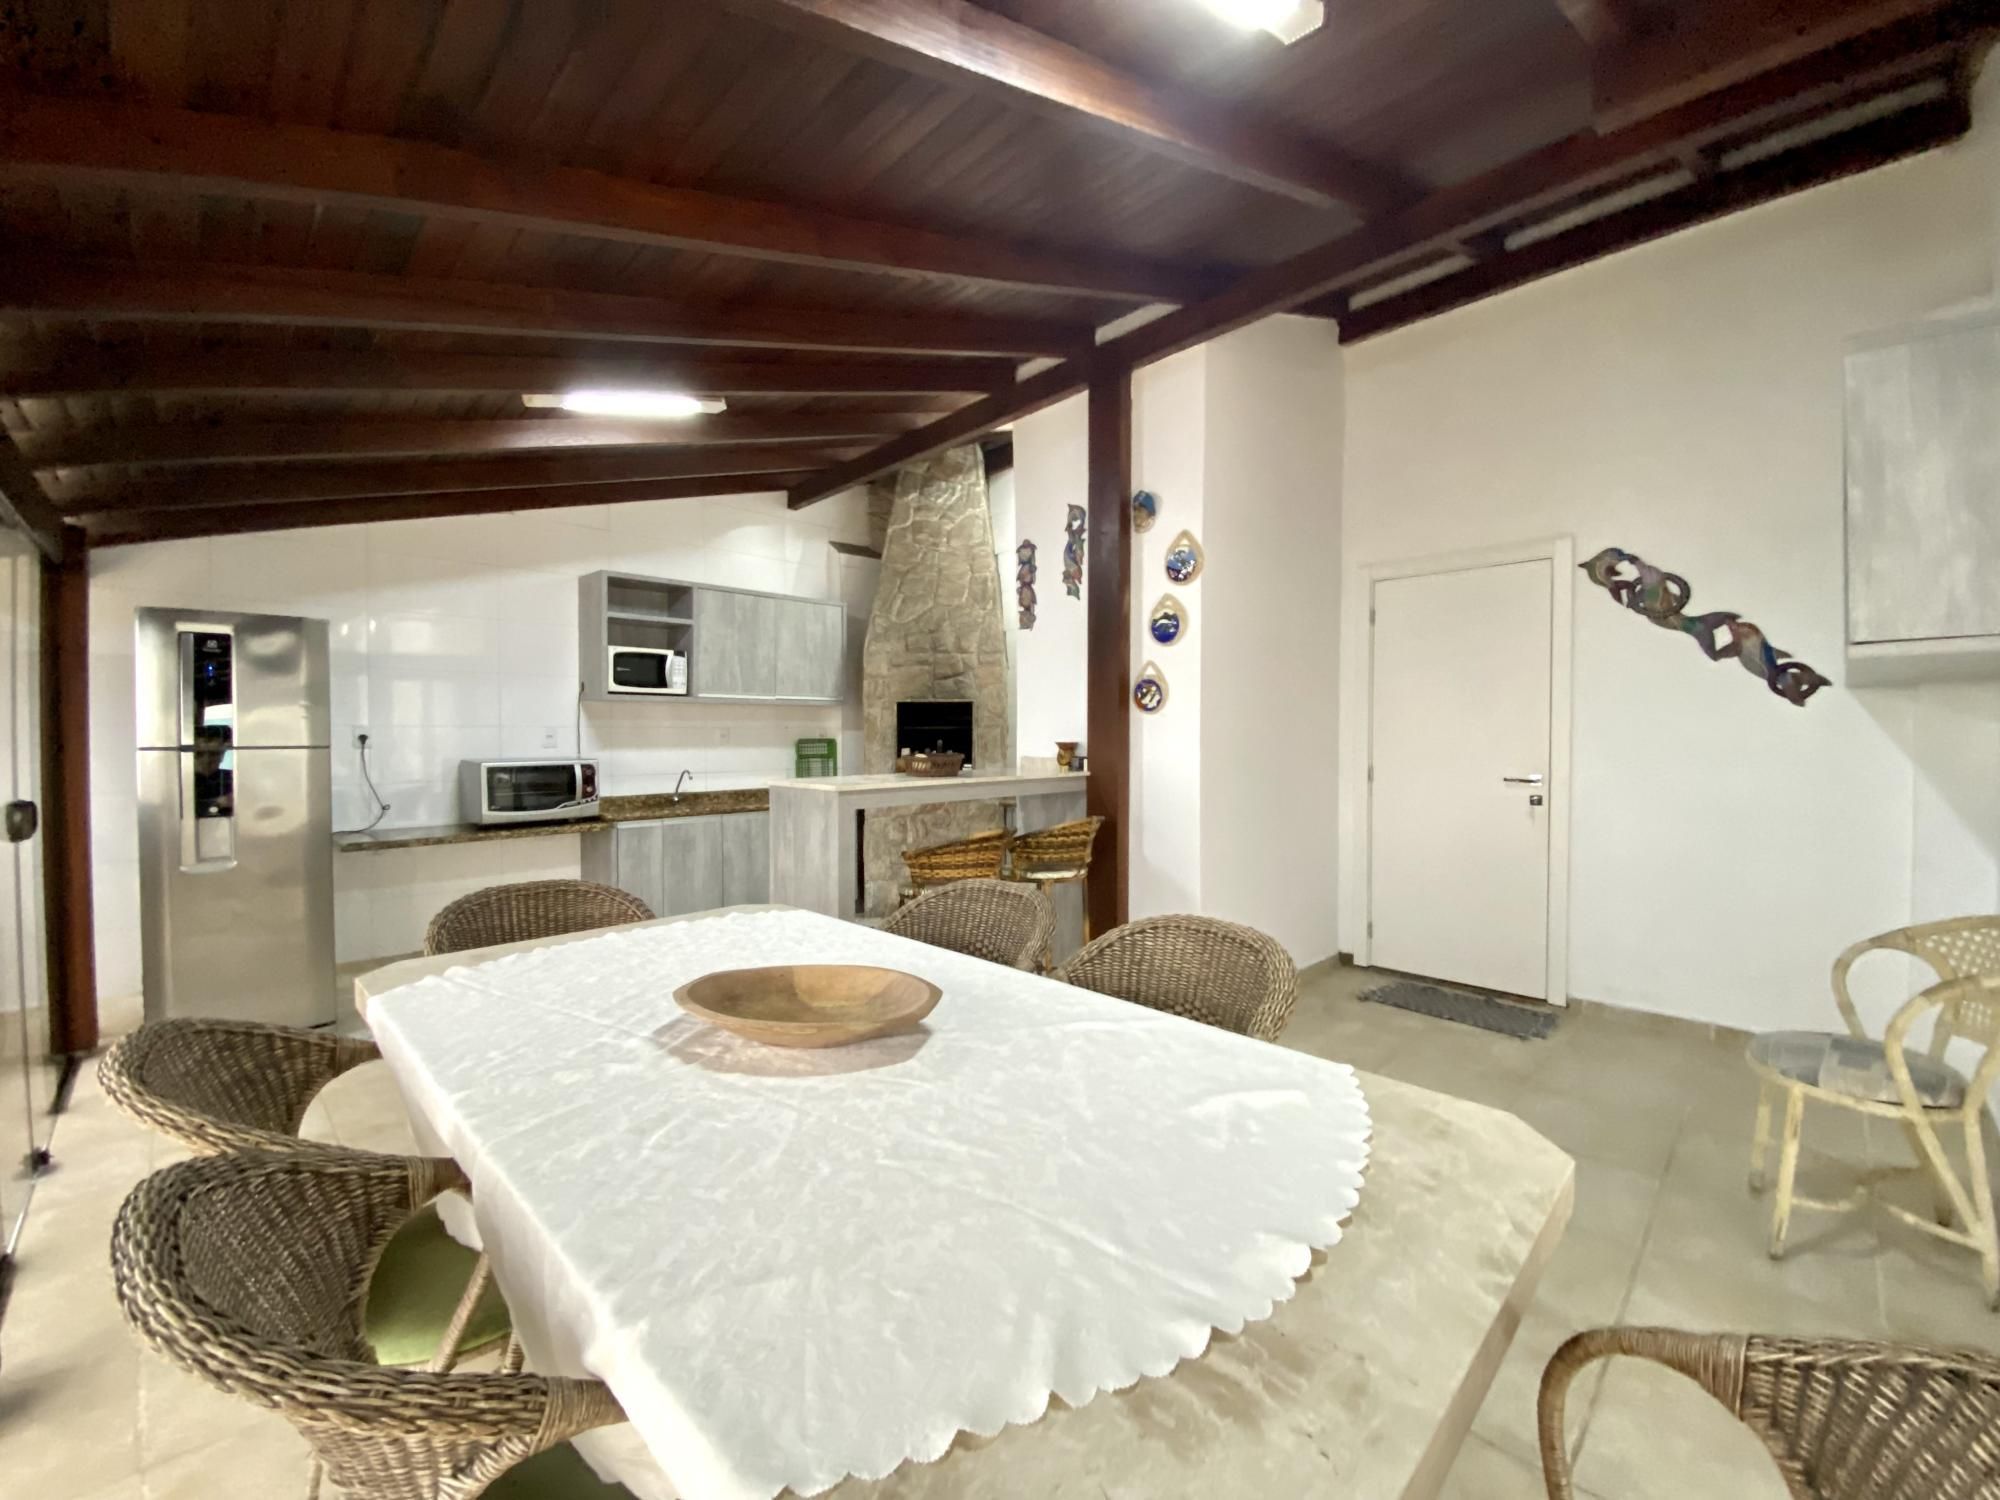 Cobertura com 5 Dormitórios para alugar, 243 m² por R$ 600,00